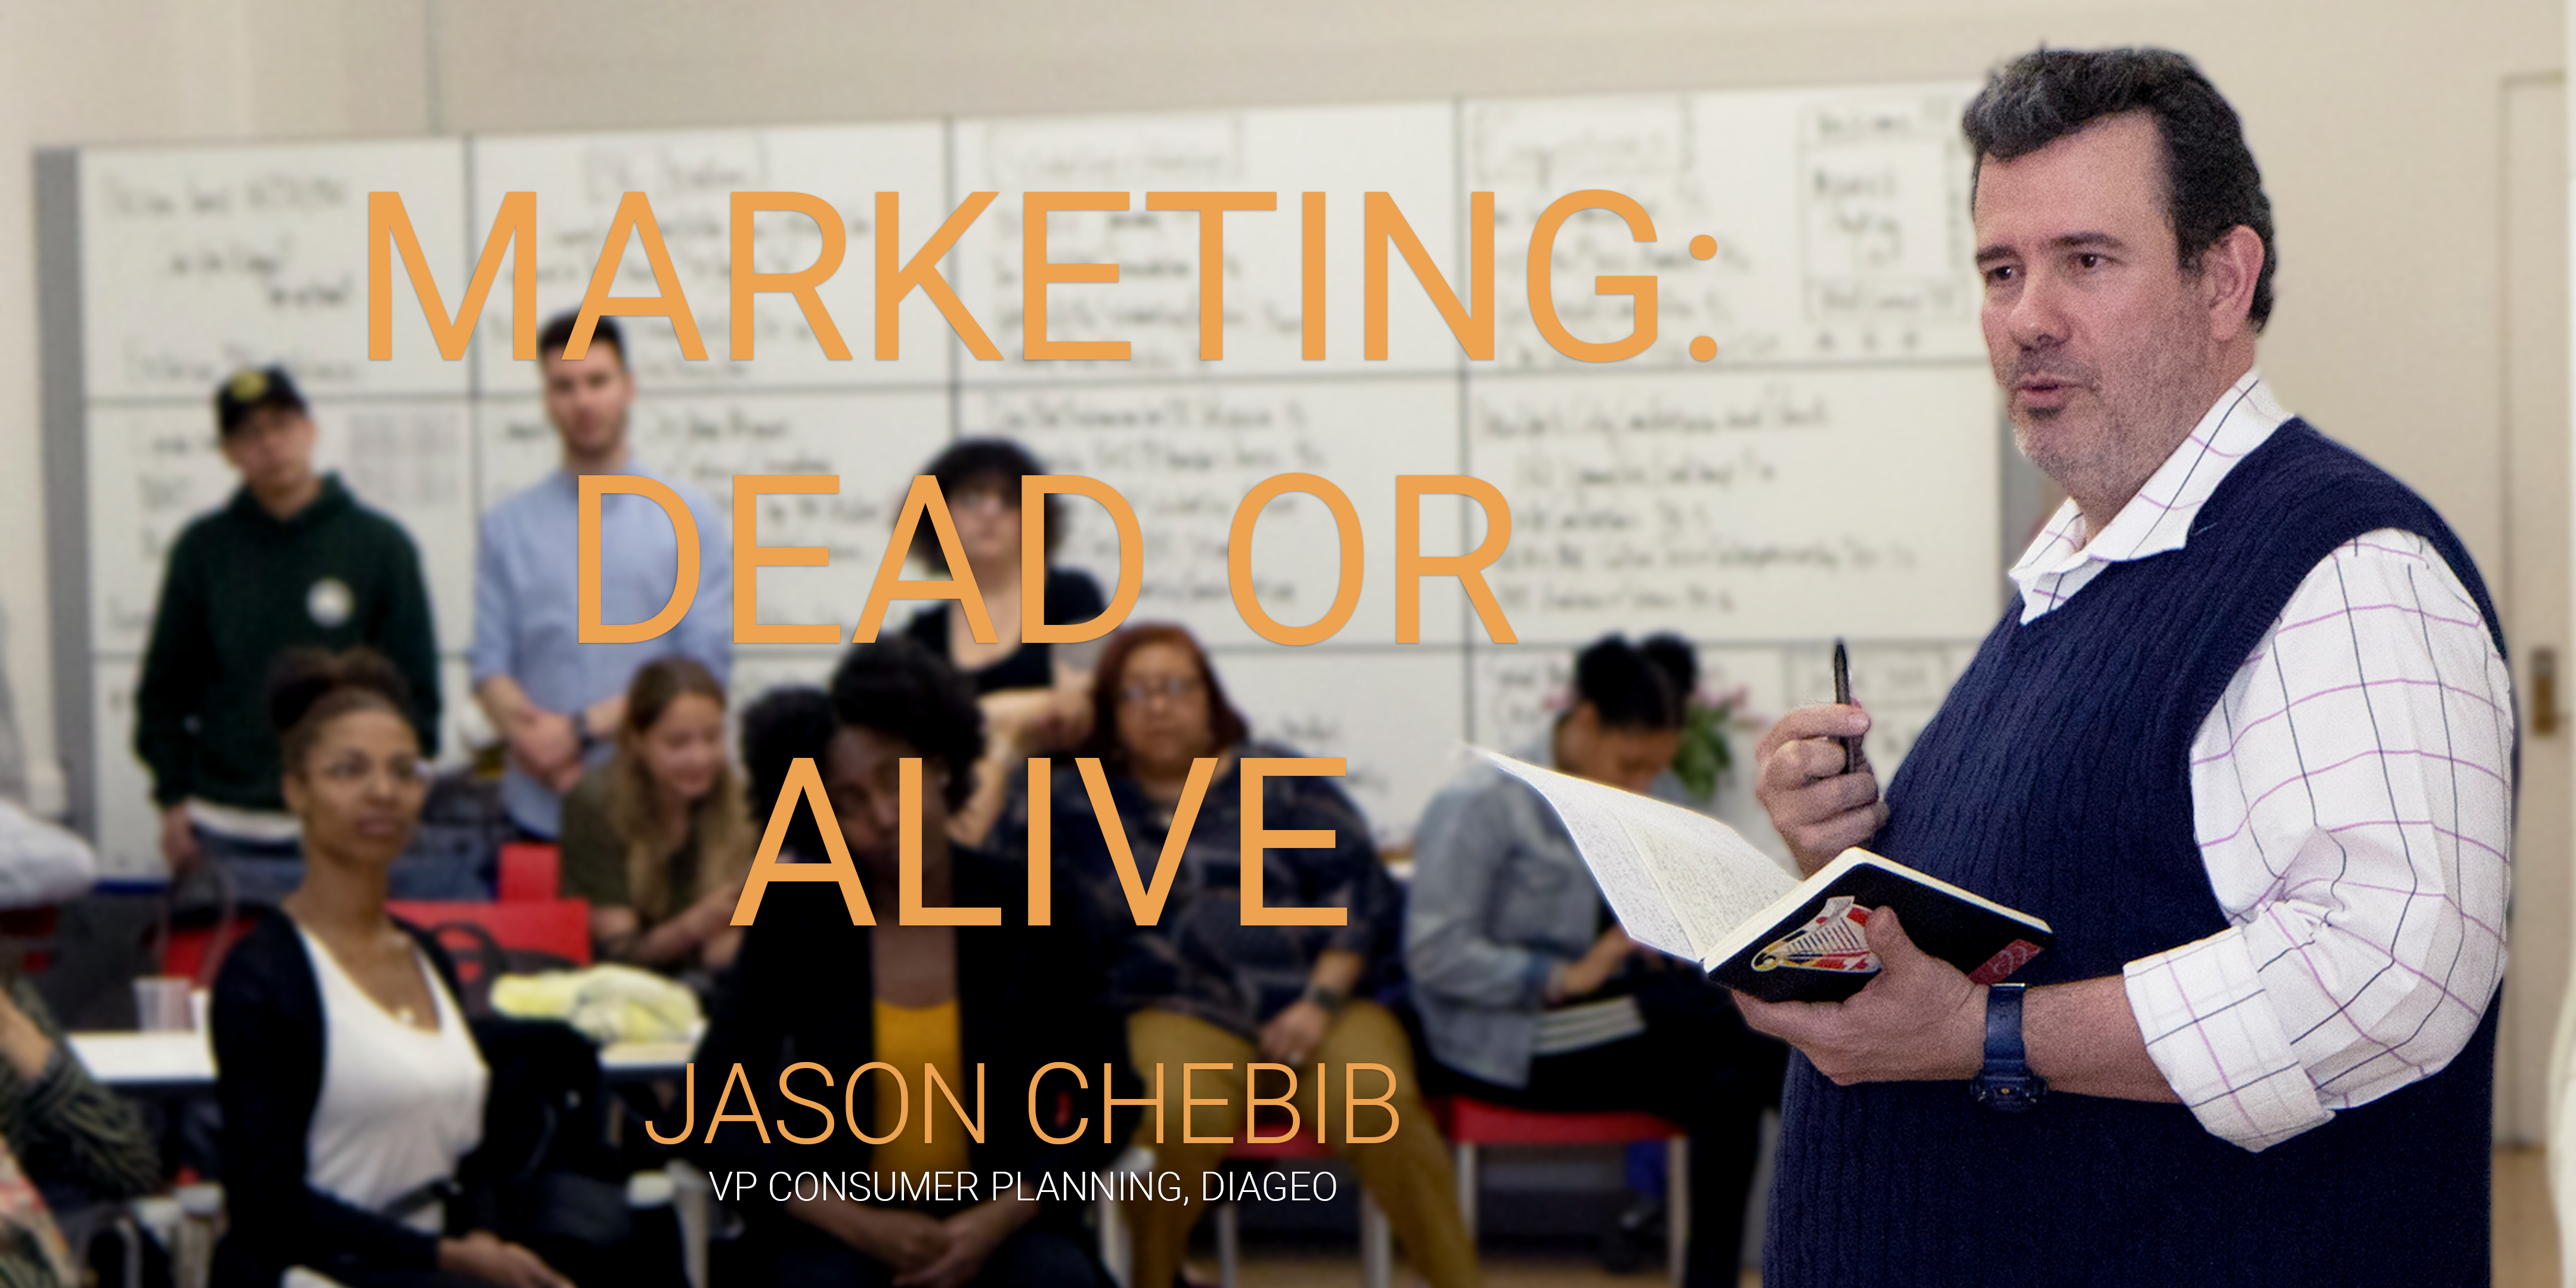 Jason Chebib @BIC "Marketing Dead or Alive" 6pm SH104